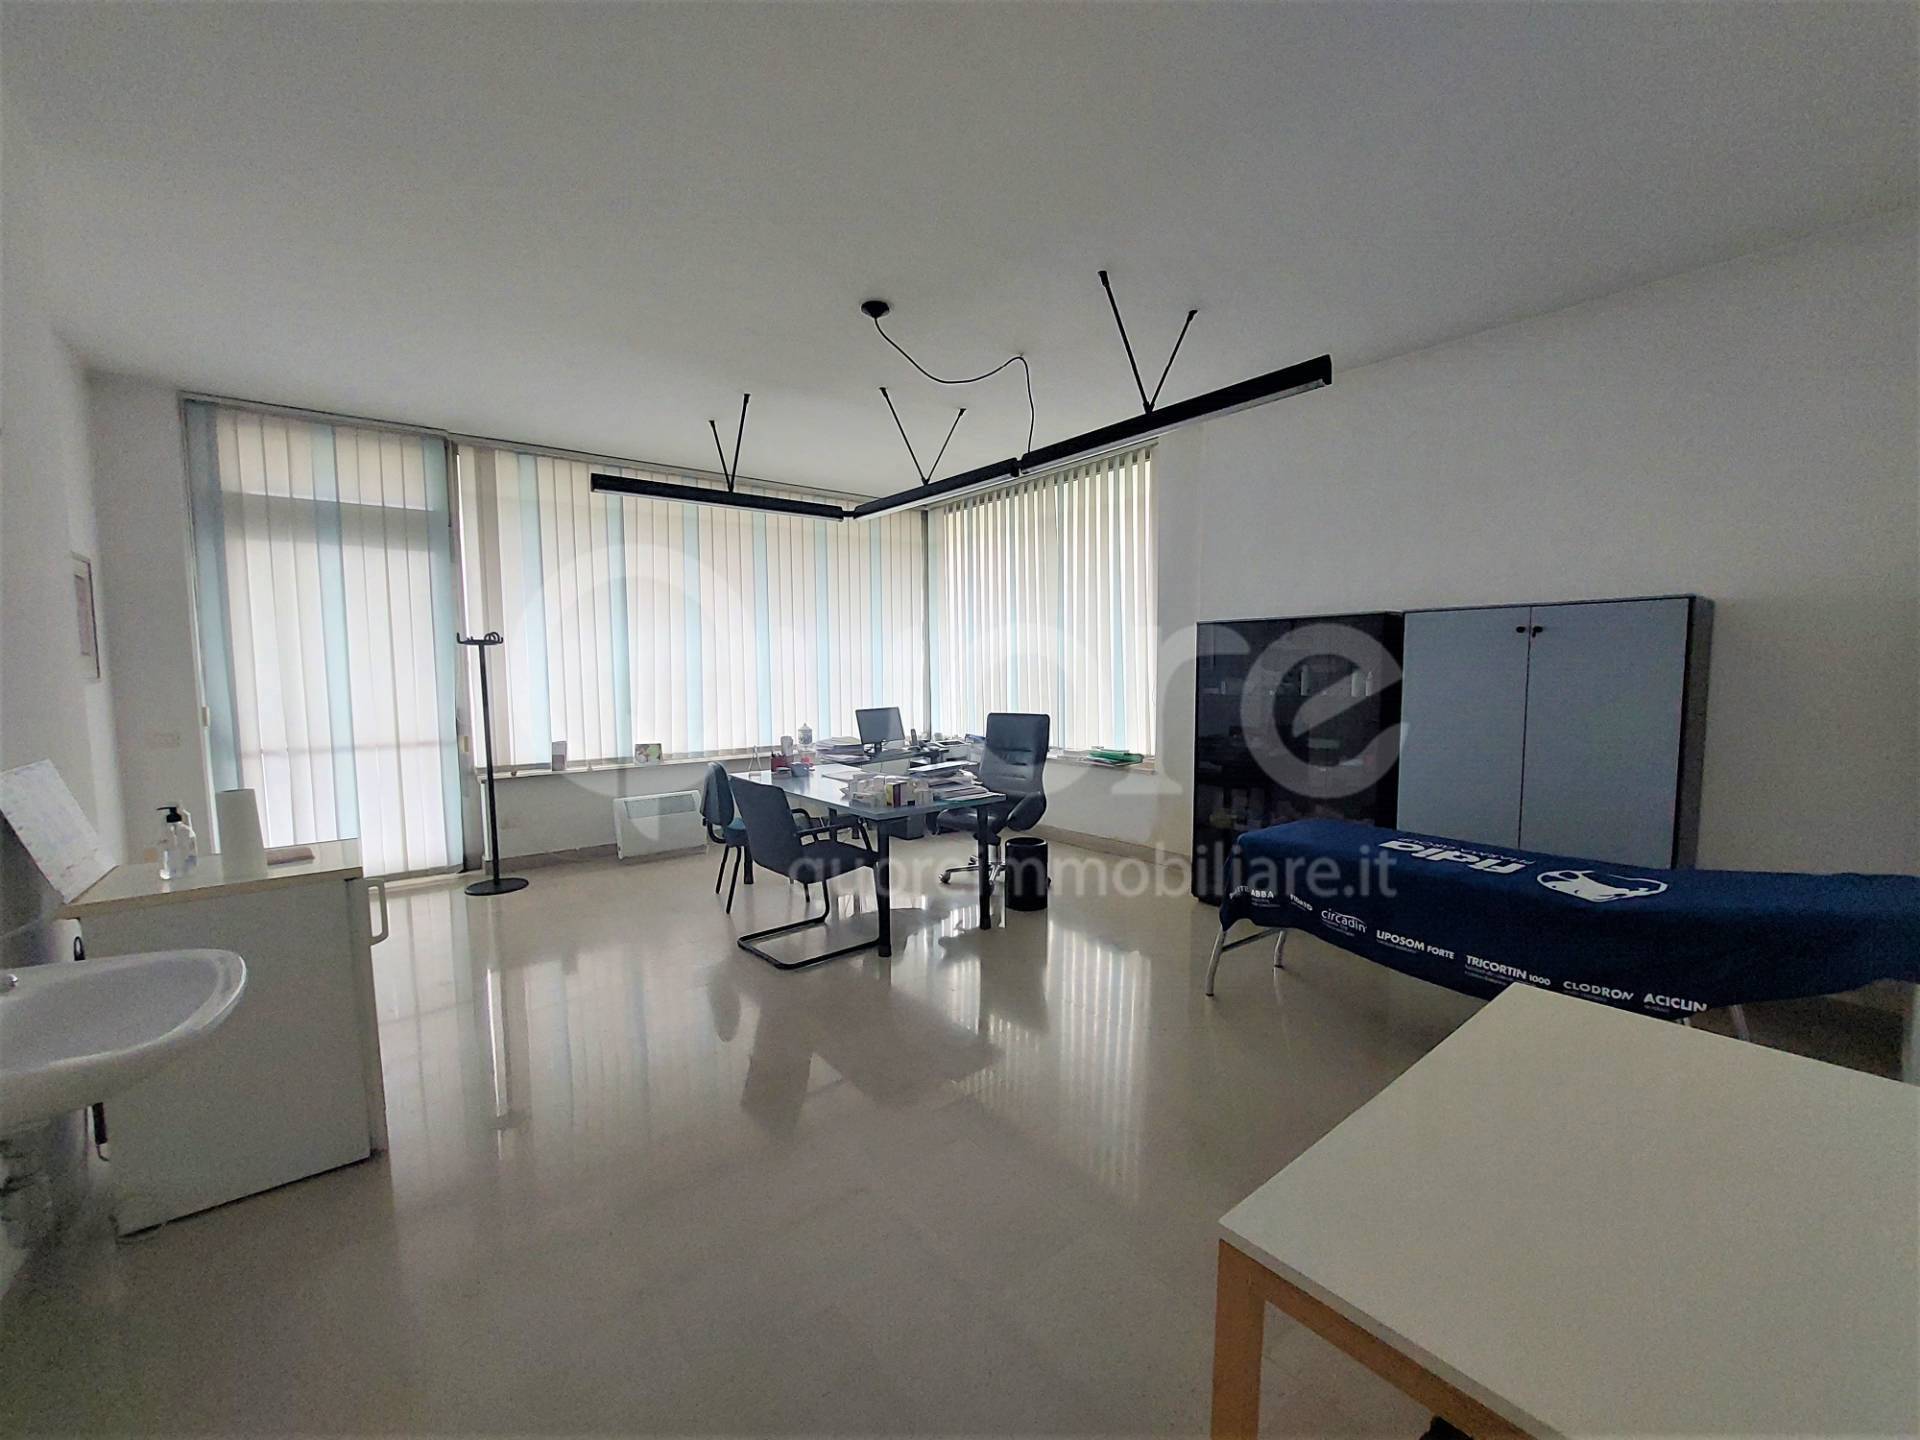 Ufficio / Studio in affitto a Udine, 9999 locali, zona Zona: Cussignacco, prezzo € 600 | CambioCasa.it